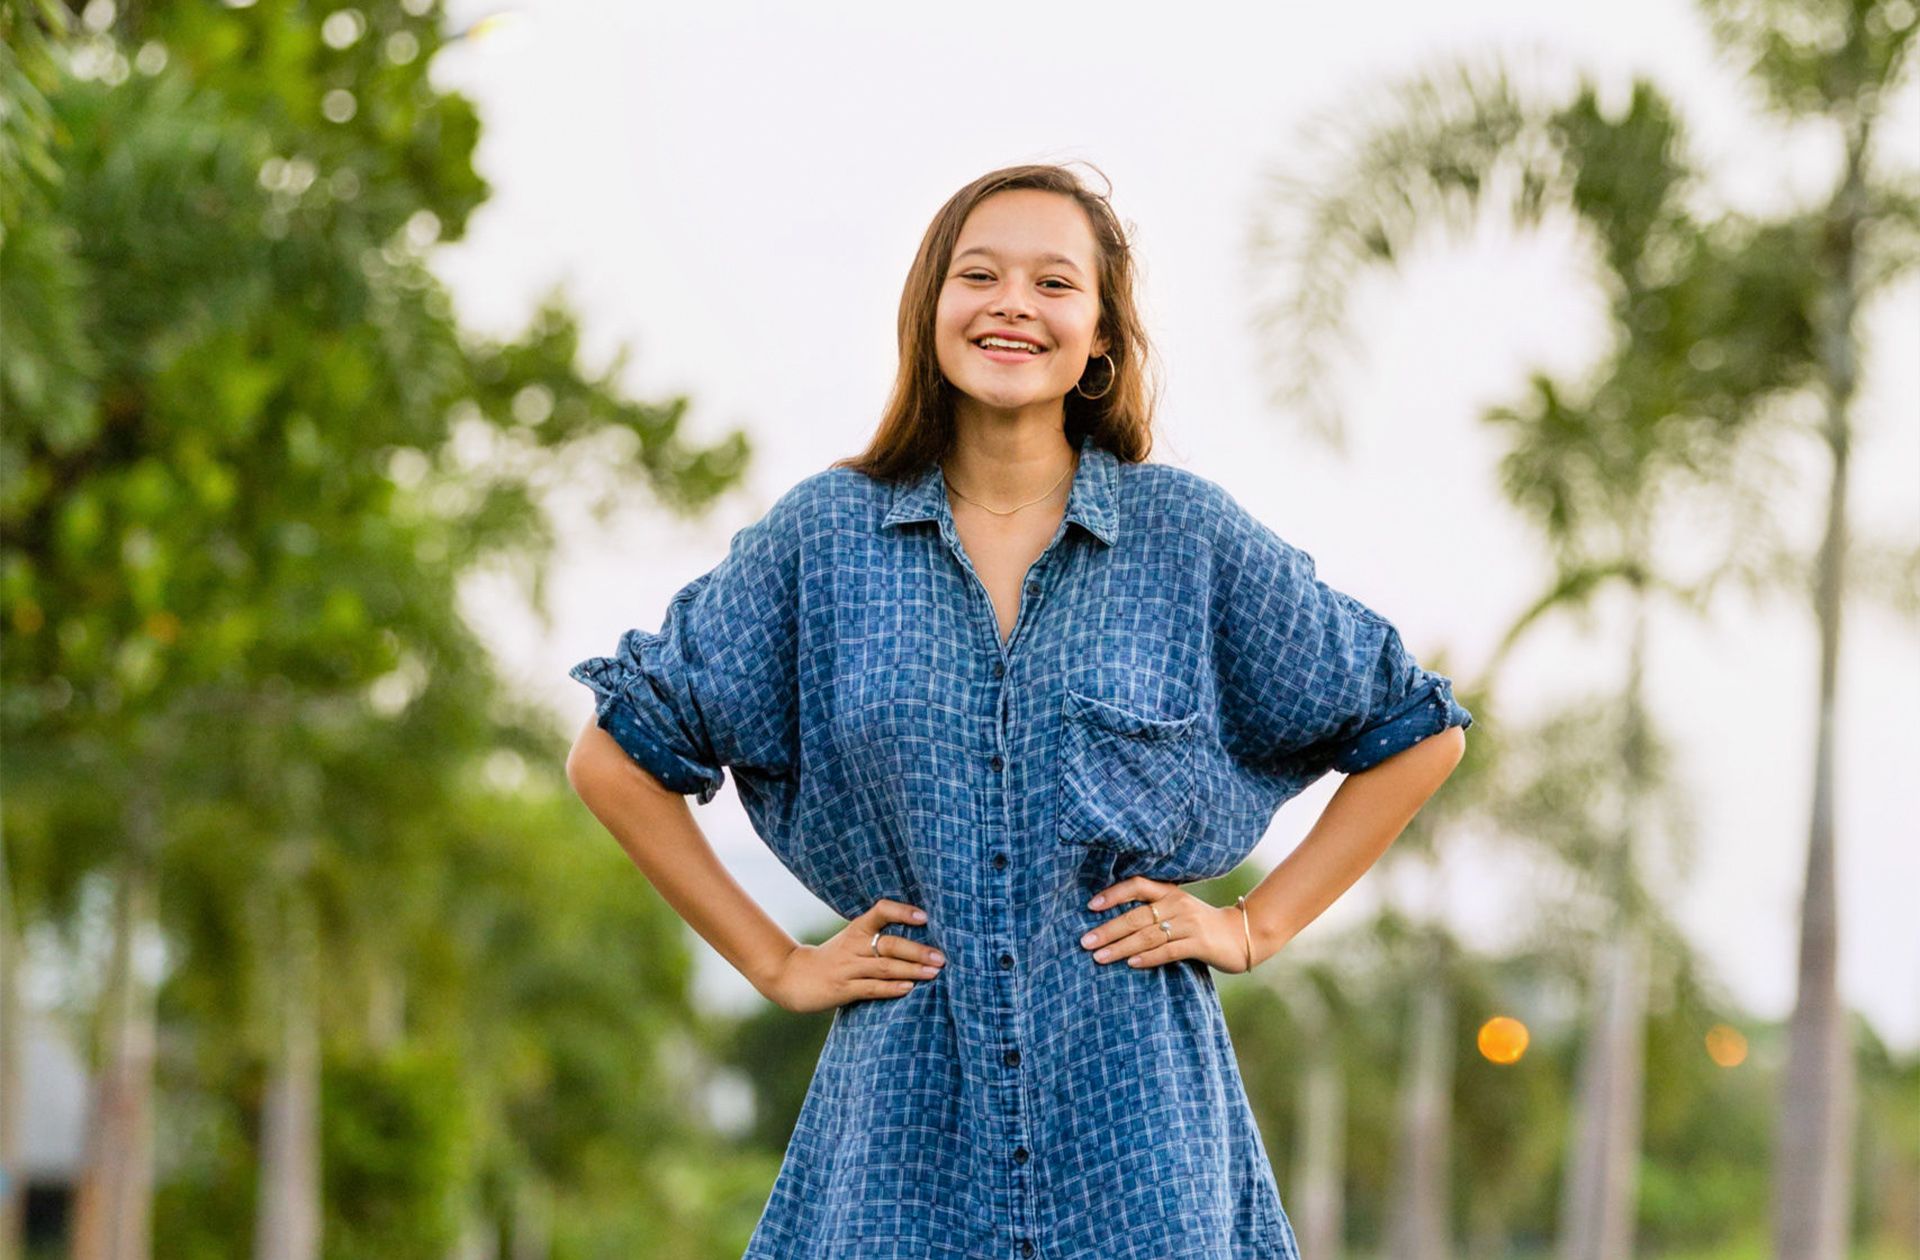 Melati Wijsen (20 Jahre), Aktivistin, gründete schon mit zwölf Jahren die Initiative Bye Bye Plastic Bags, die sich für das Verbot von Einwegplastik auf der Insel Bali engagiert. Ihr jüngstes Projekt: Youthtopia, eine globale Plattform, deren Ziel es ist, eine Generation von Changemakern auszubilden, um ihnen so das Rüstzeug zu geben, positive Veränderungen zu bewirken.